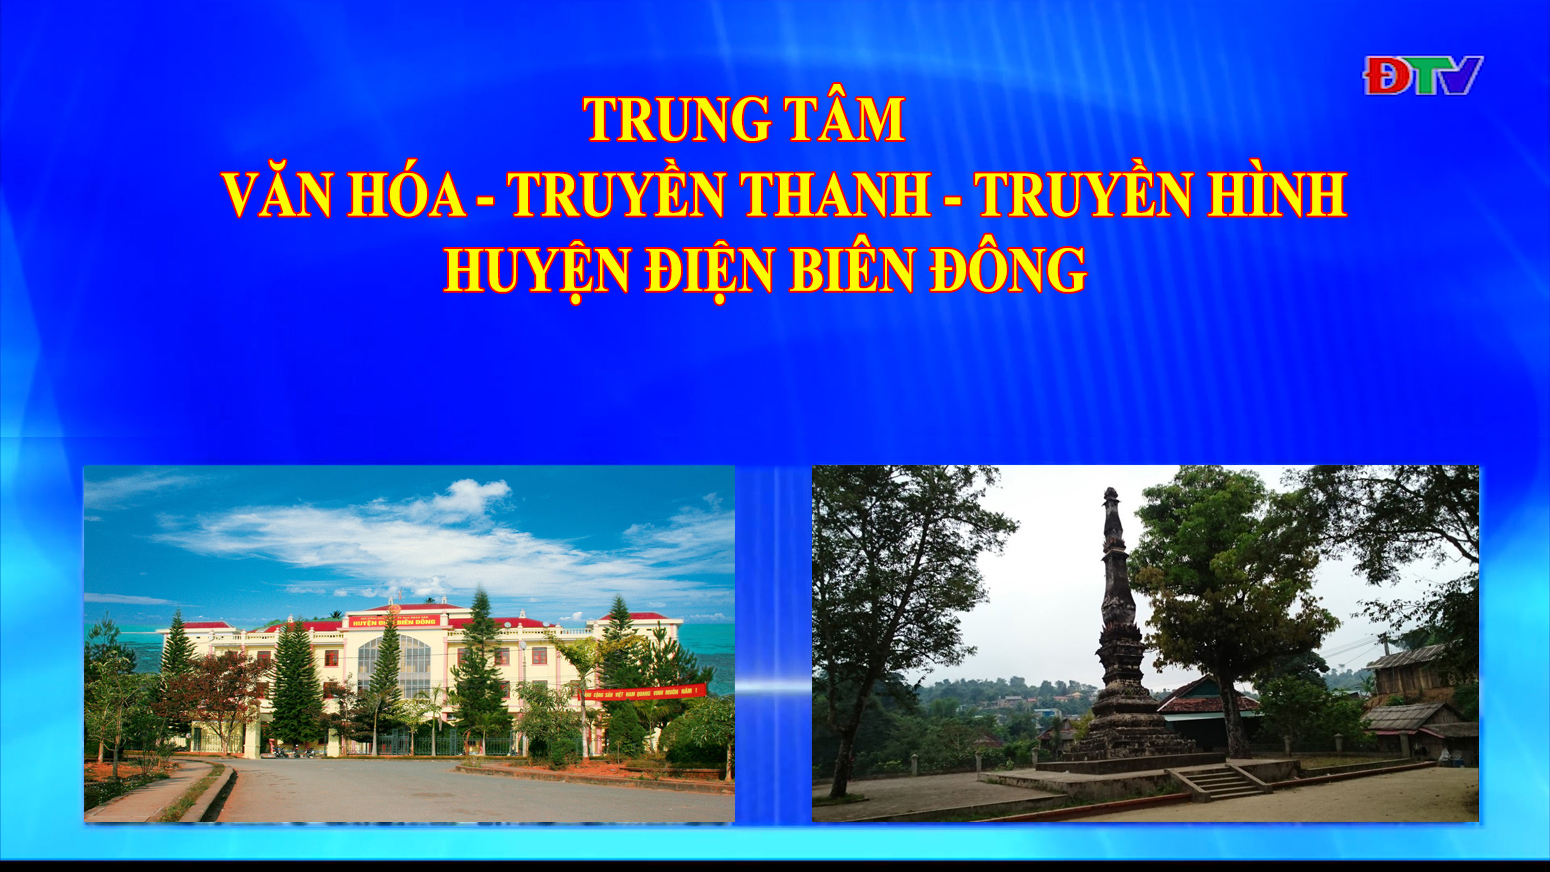 Trung tâm VH-TTTH huyện Điện Biên Đông (Ngày 4-9-2021)